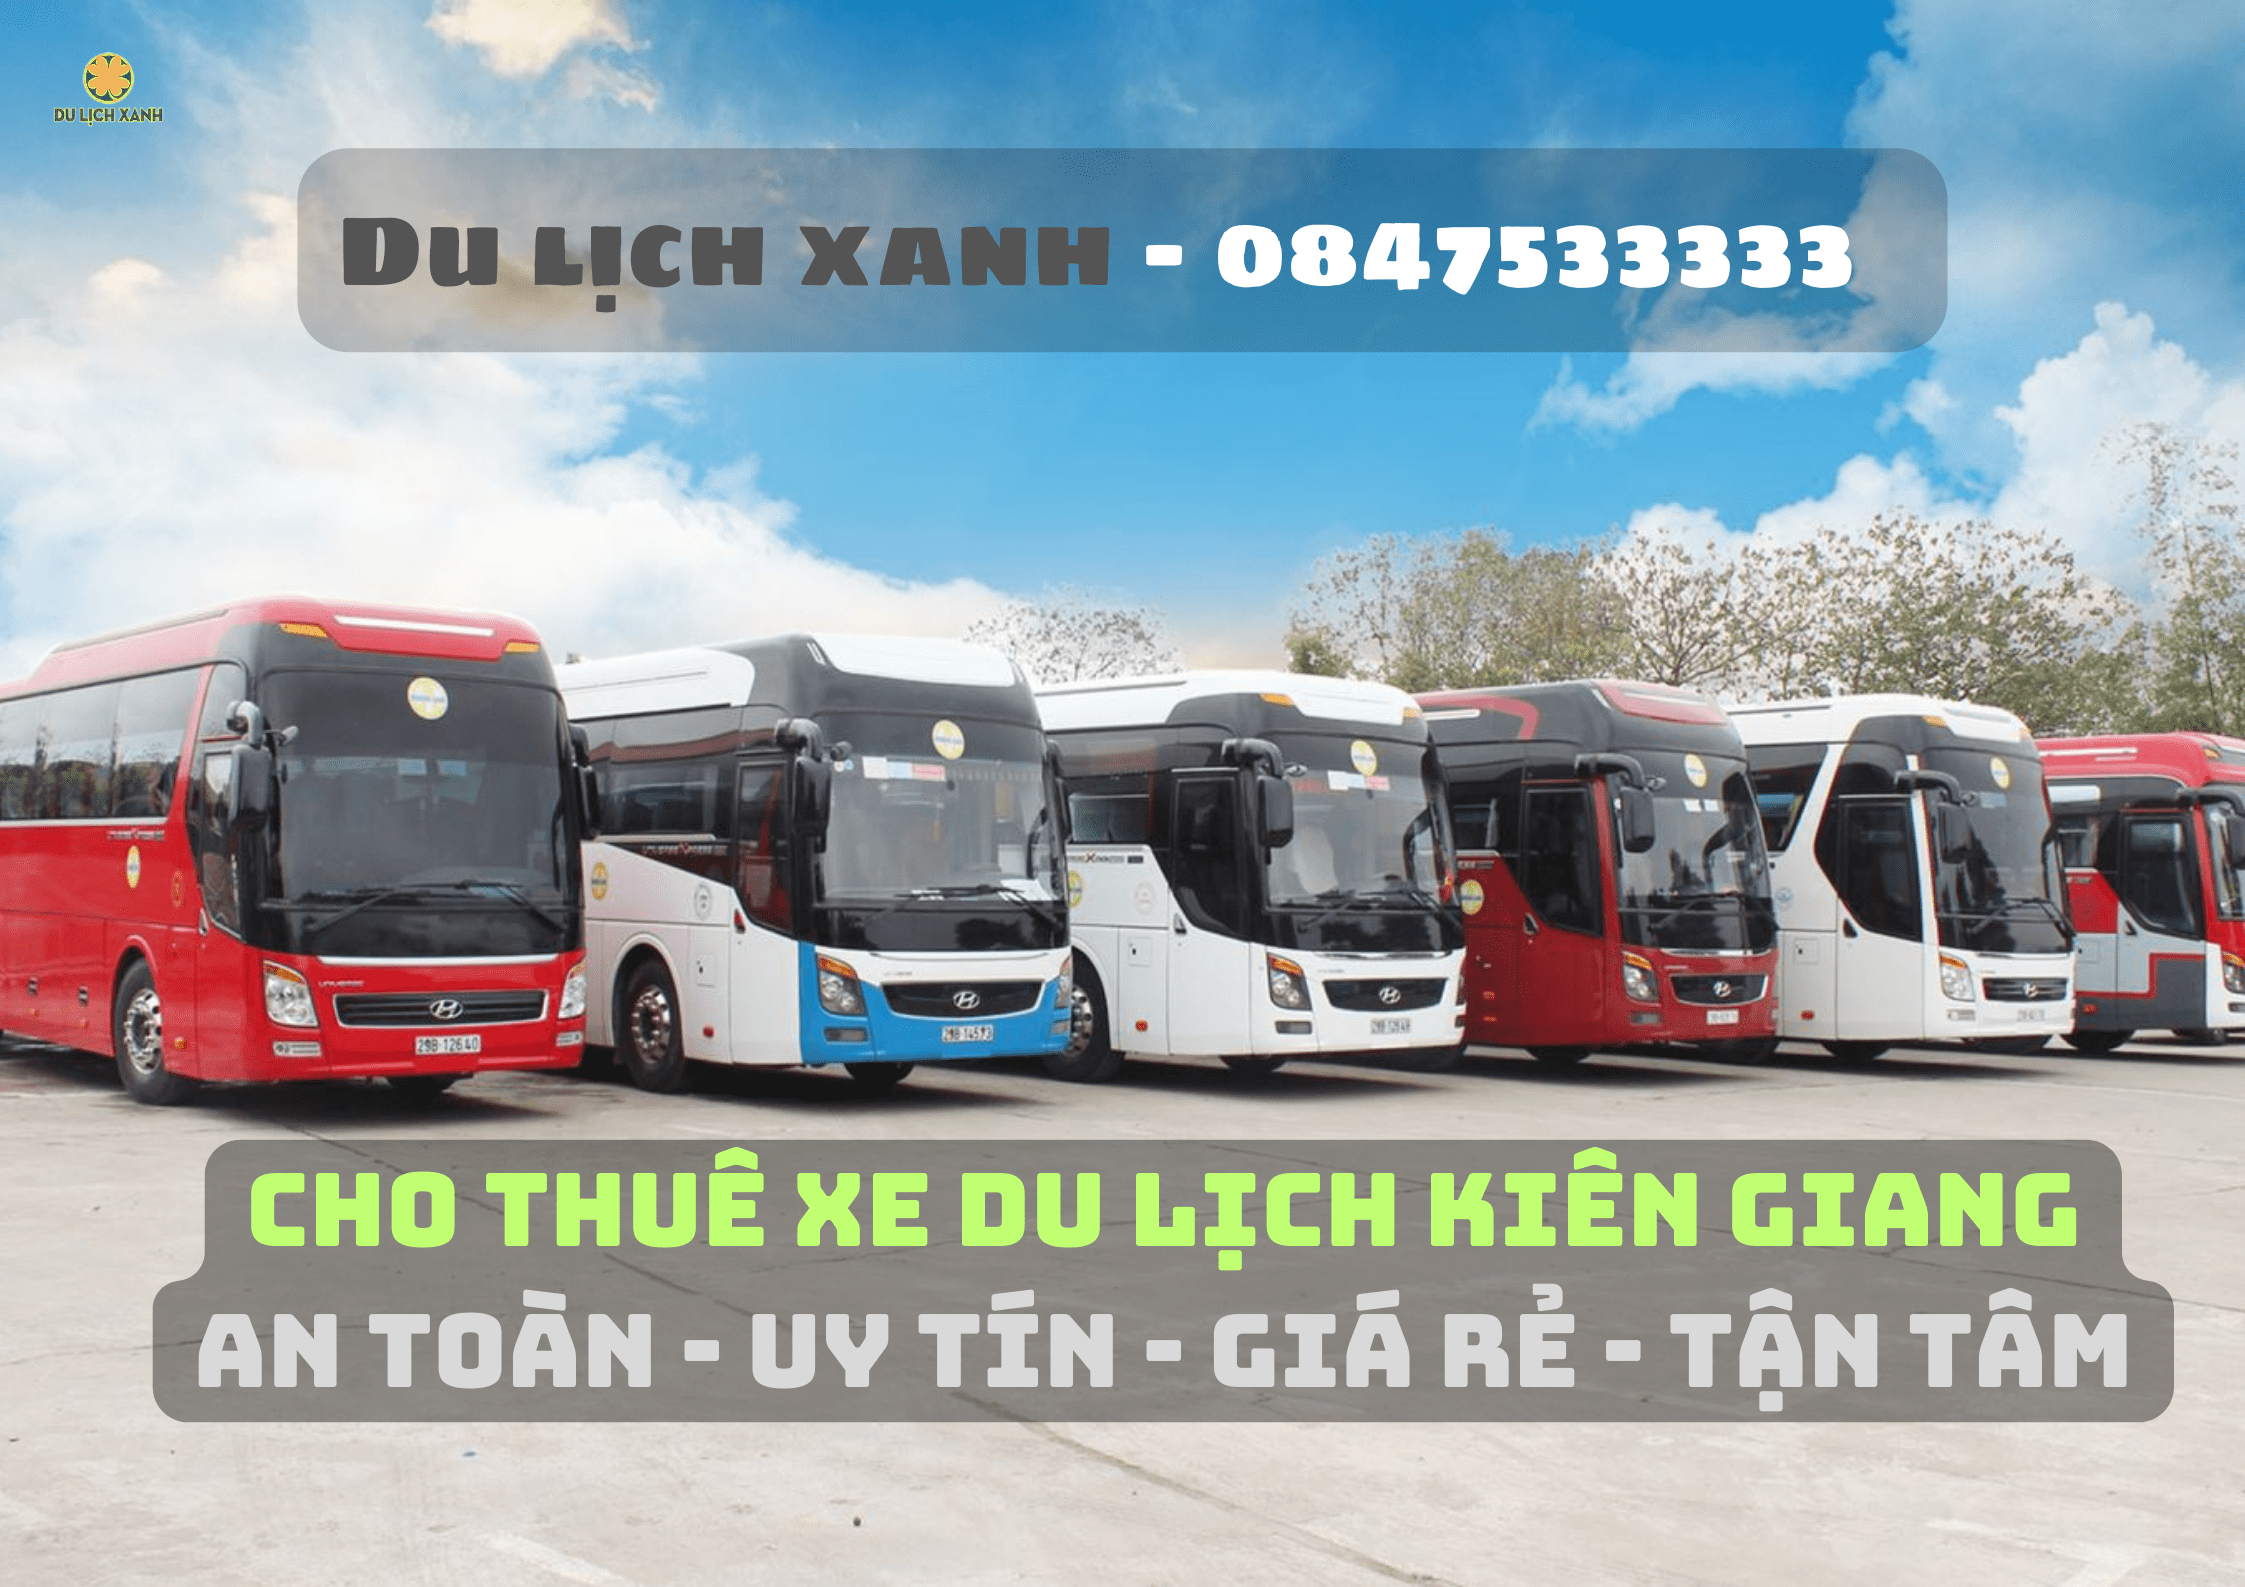 Bảng giá cho thuê xe du lịch Kiên Giang